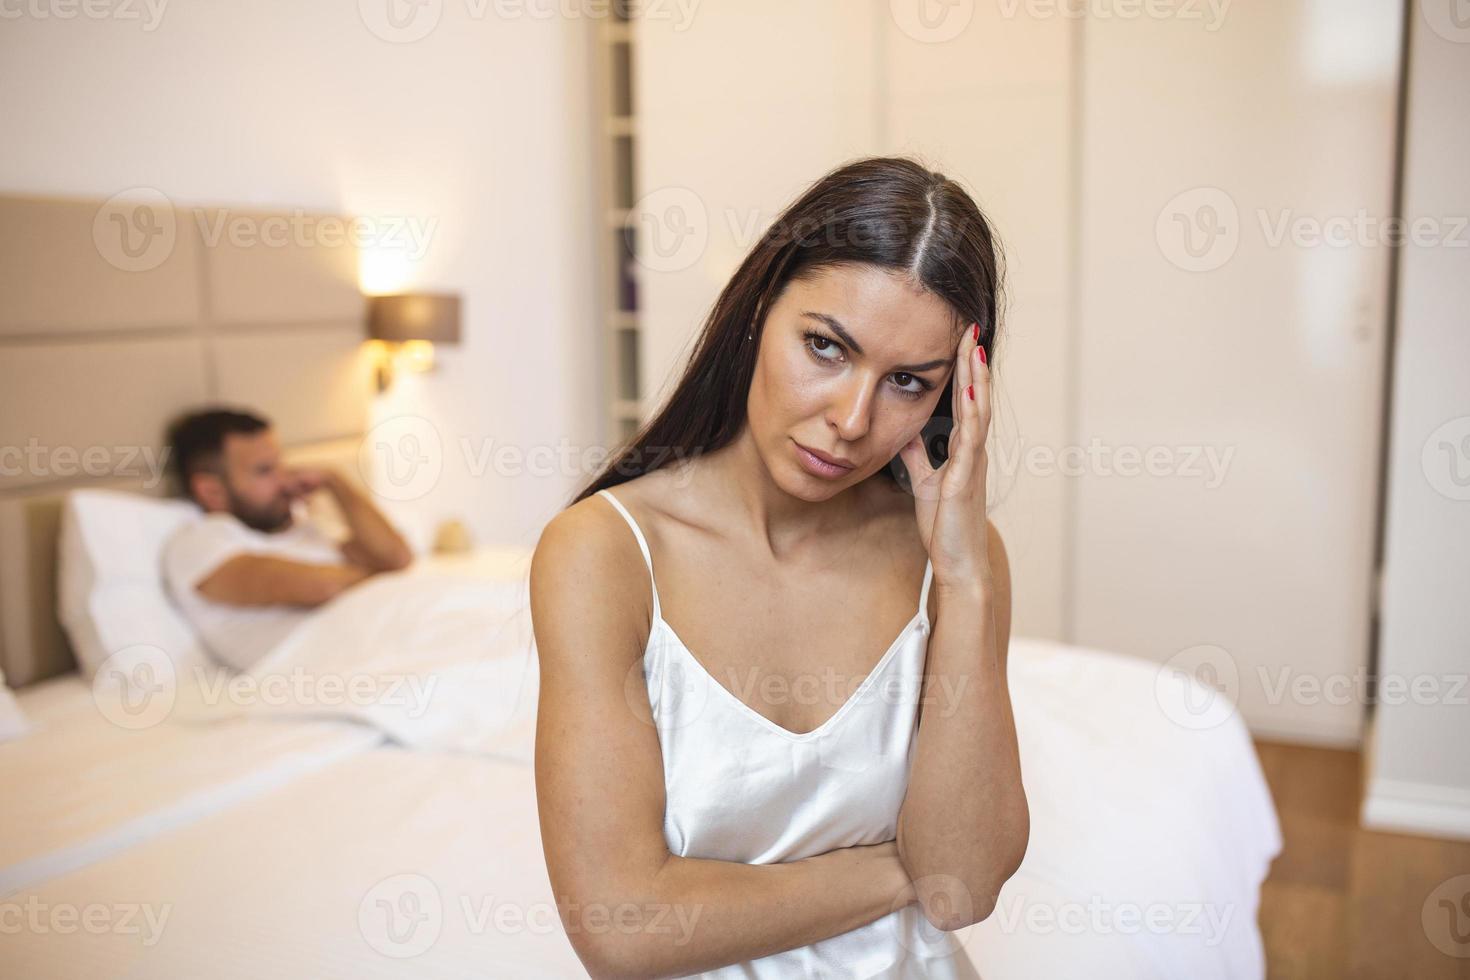 pareja peleando debido a los celos en la relación en el hogar, la pareja joven con problemas de relación parece deprimida y frustrada foto